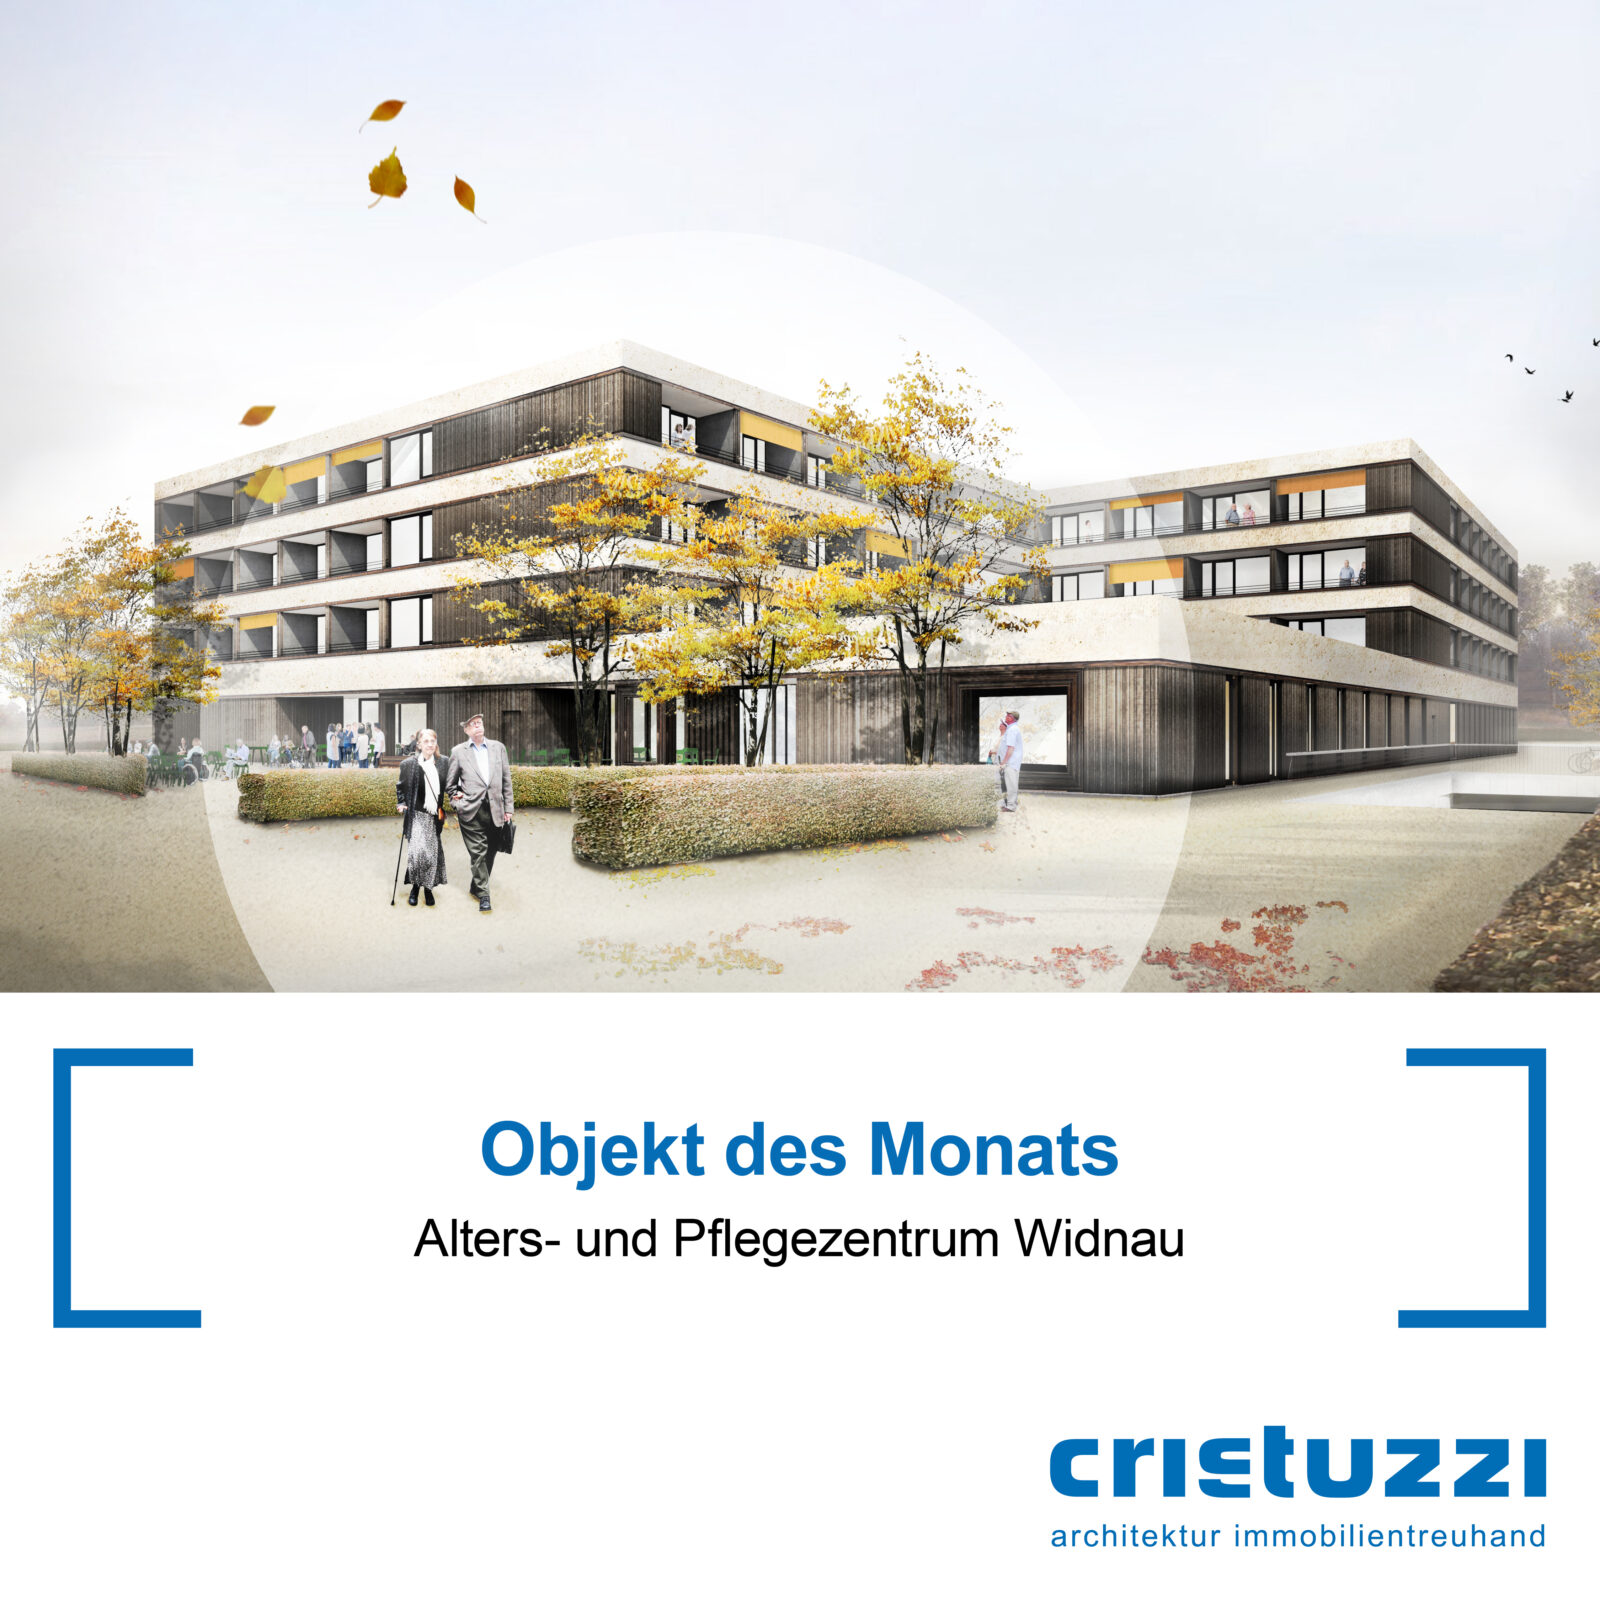 Cristuzzi für das neue Alters- und Pflegezentrum Widnau